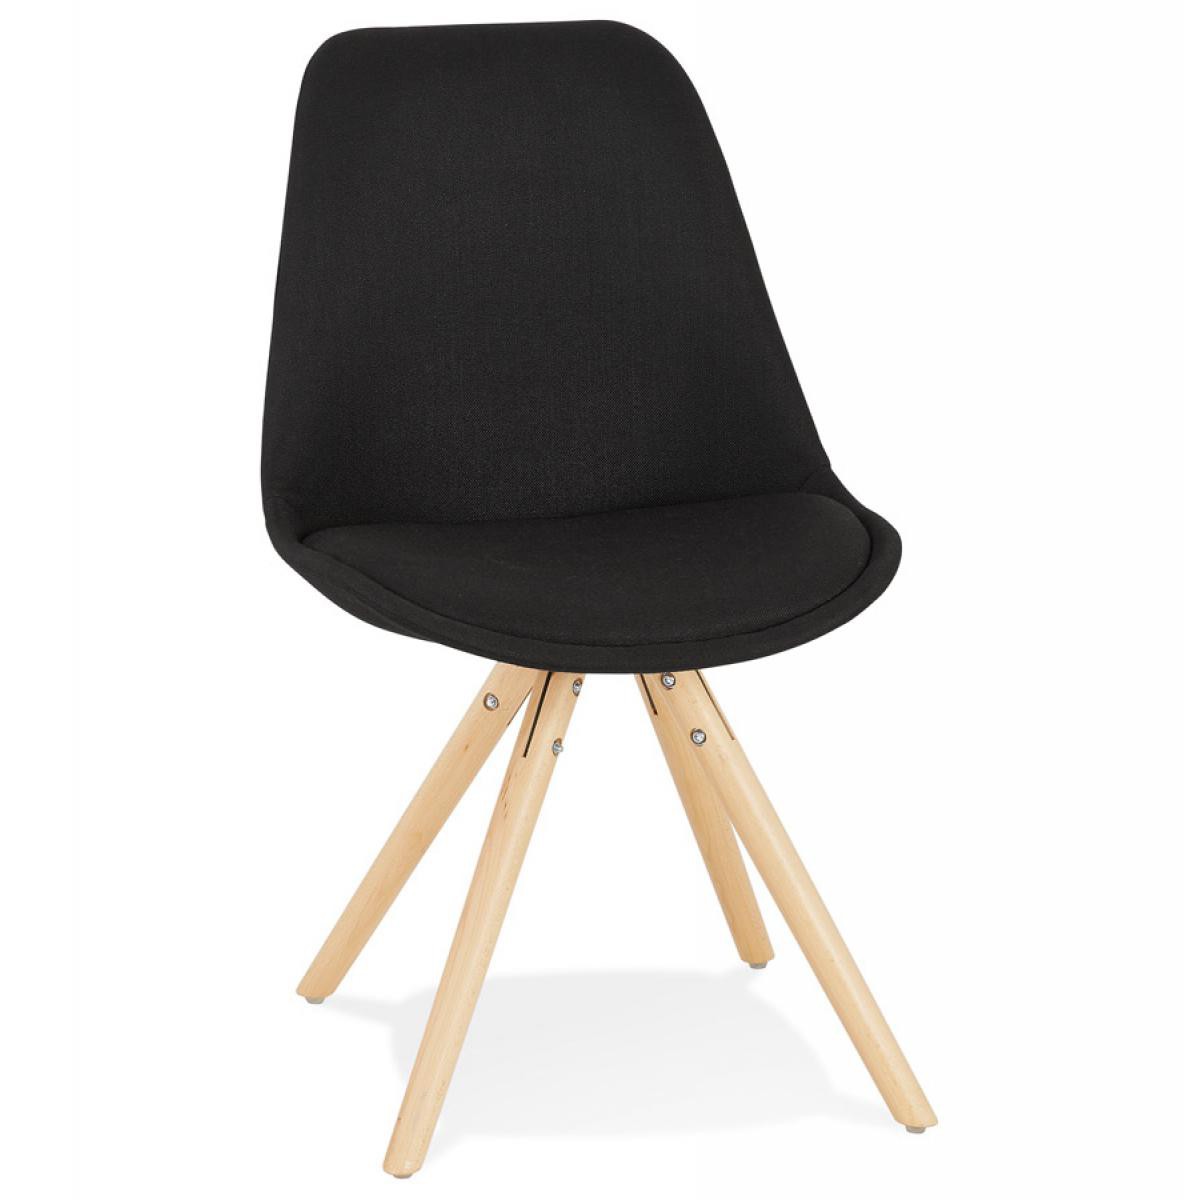 Alterego - Chaise scandinave 'HIPHOP' en tissu noir avec pieds en bois finition naturelle - Chaises